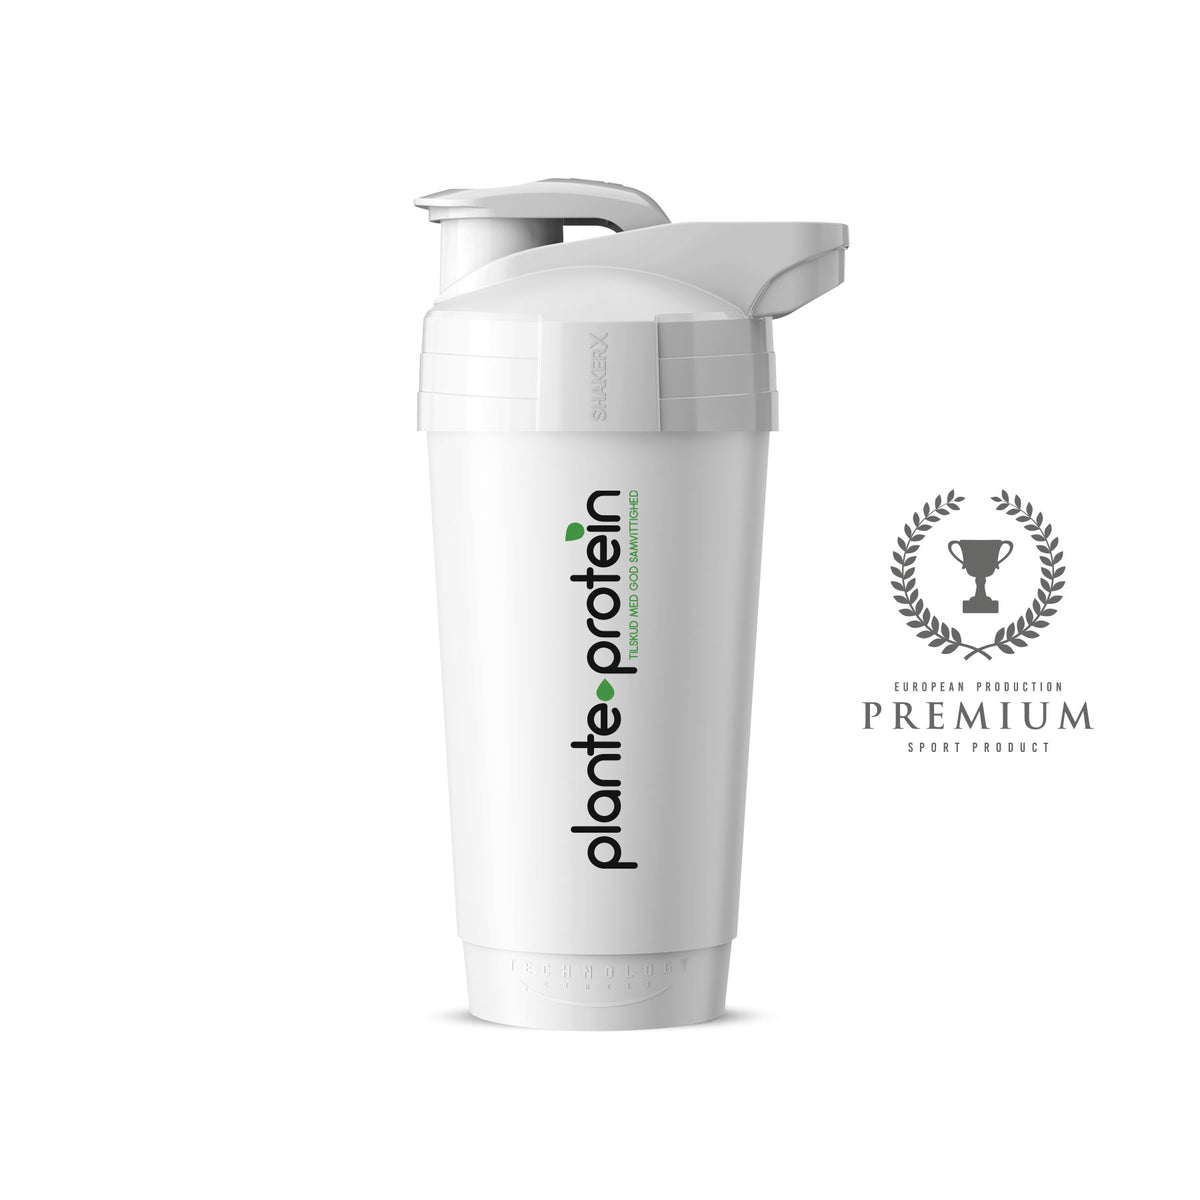 Plante-protein - ShakerX - 700 ml